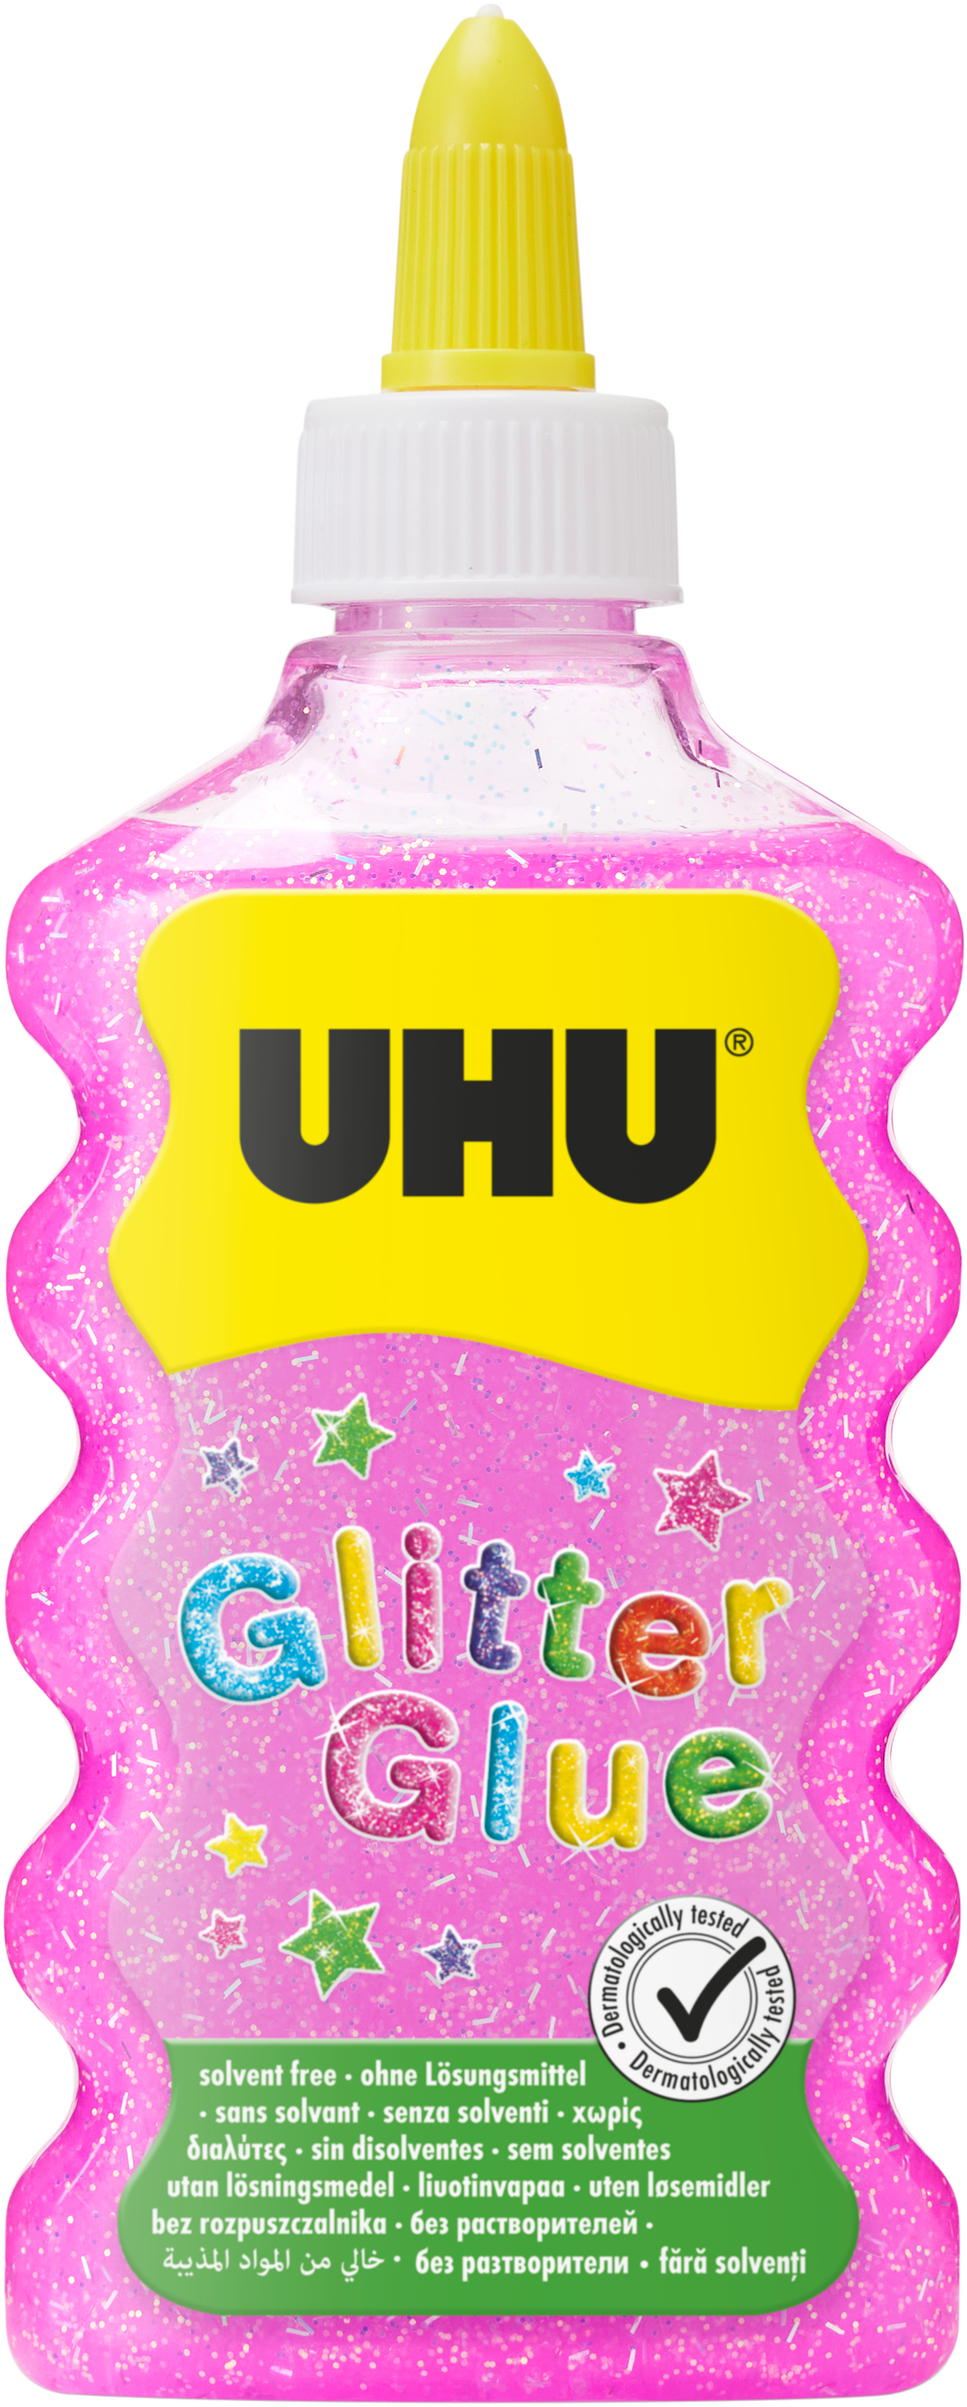 UHU Glitter Glue Maxi 510571 rose, 185g